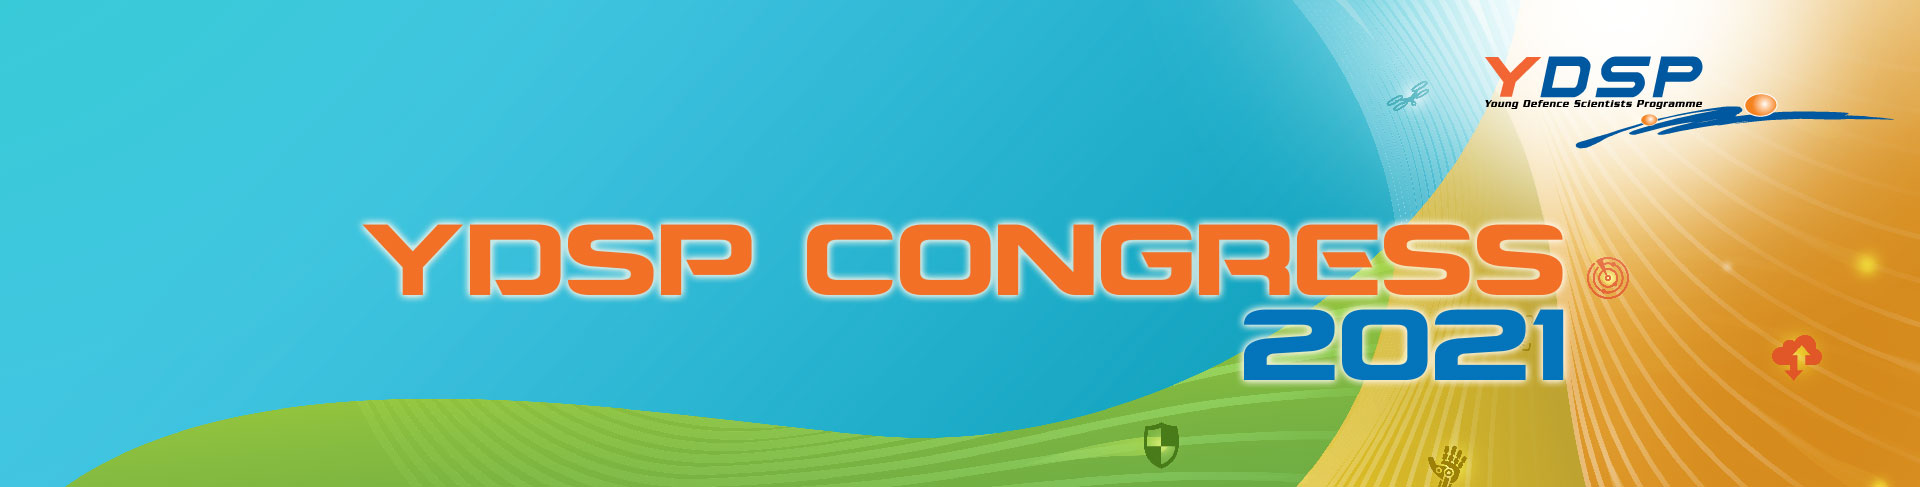 ydsp-congress-2021_01